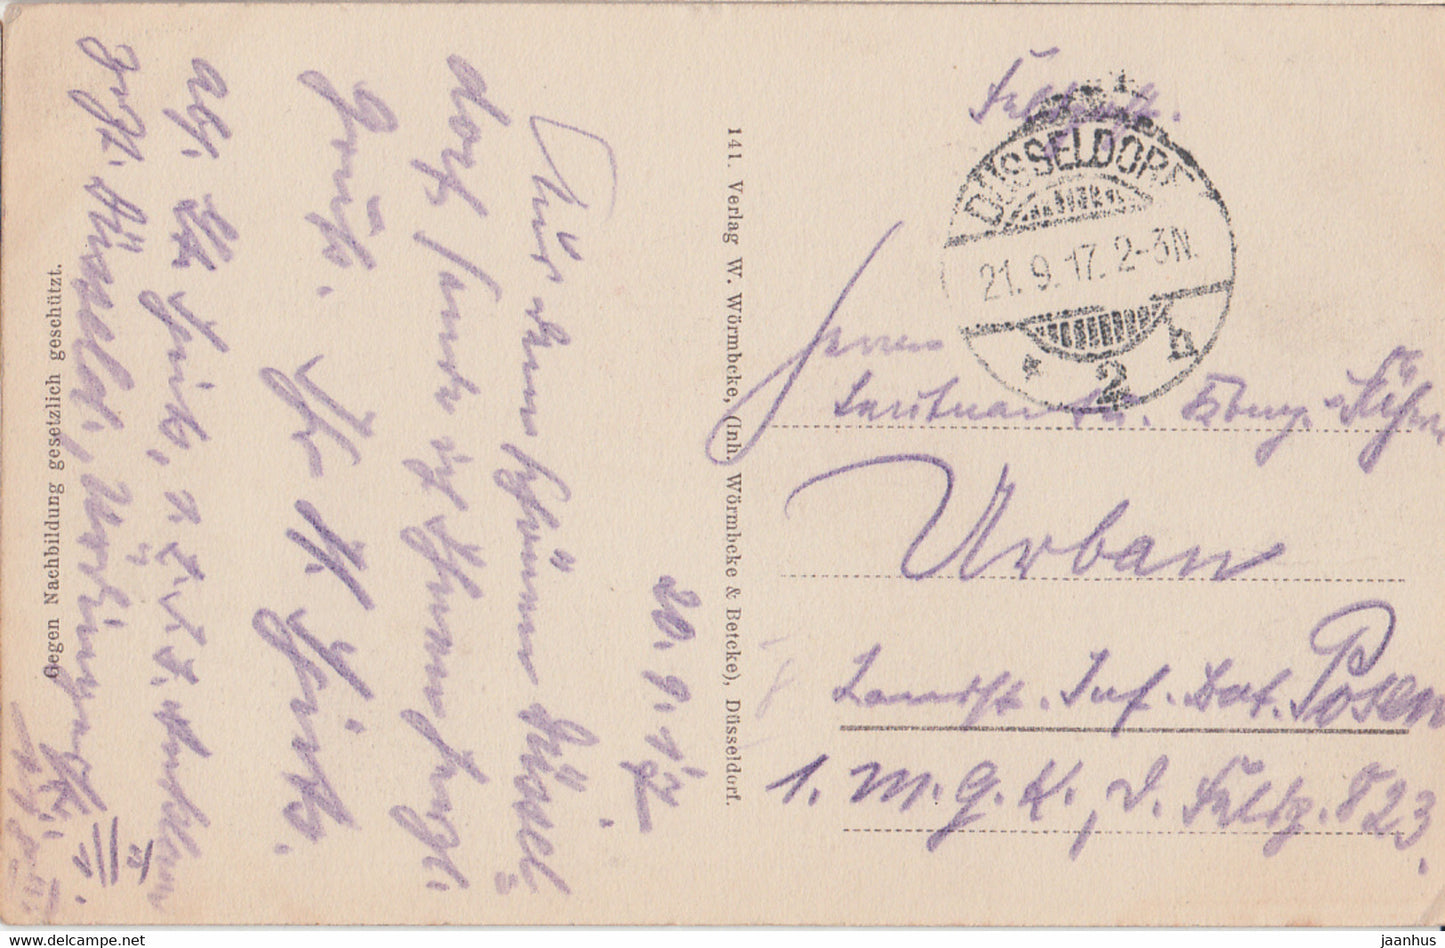 Dusseldorf - Kunsthalle - Feldpost - old postcard - 1917 - Germany - used